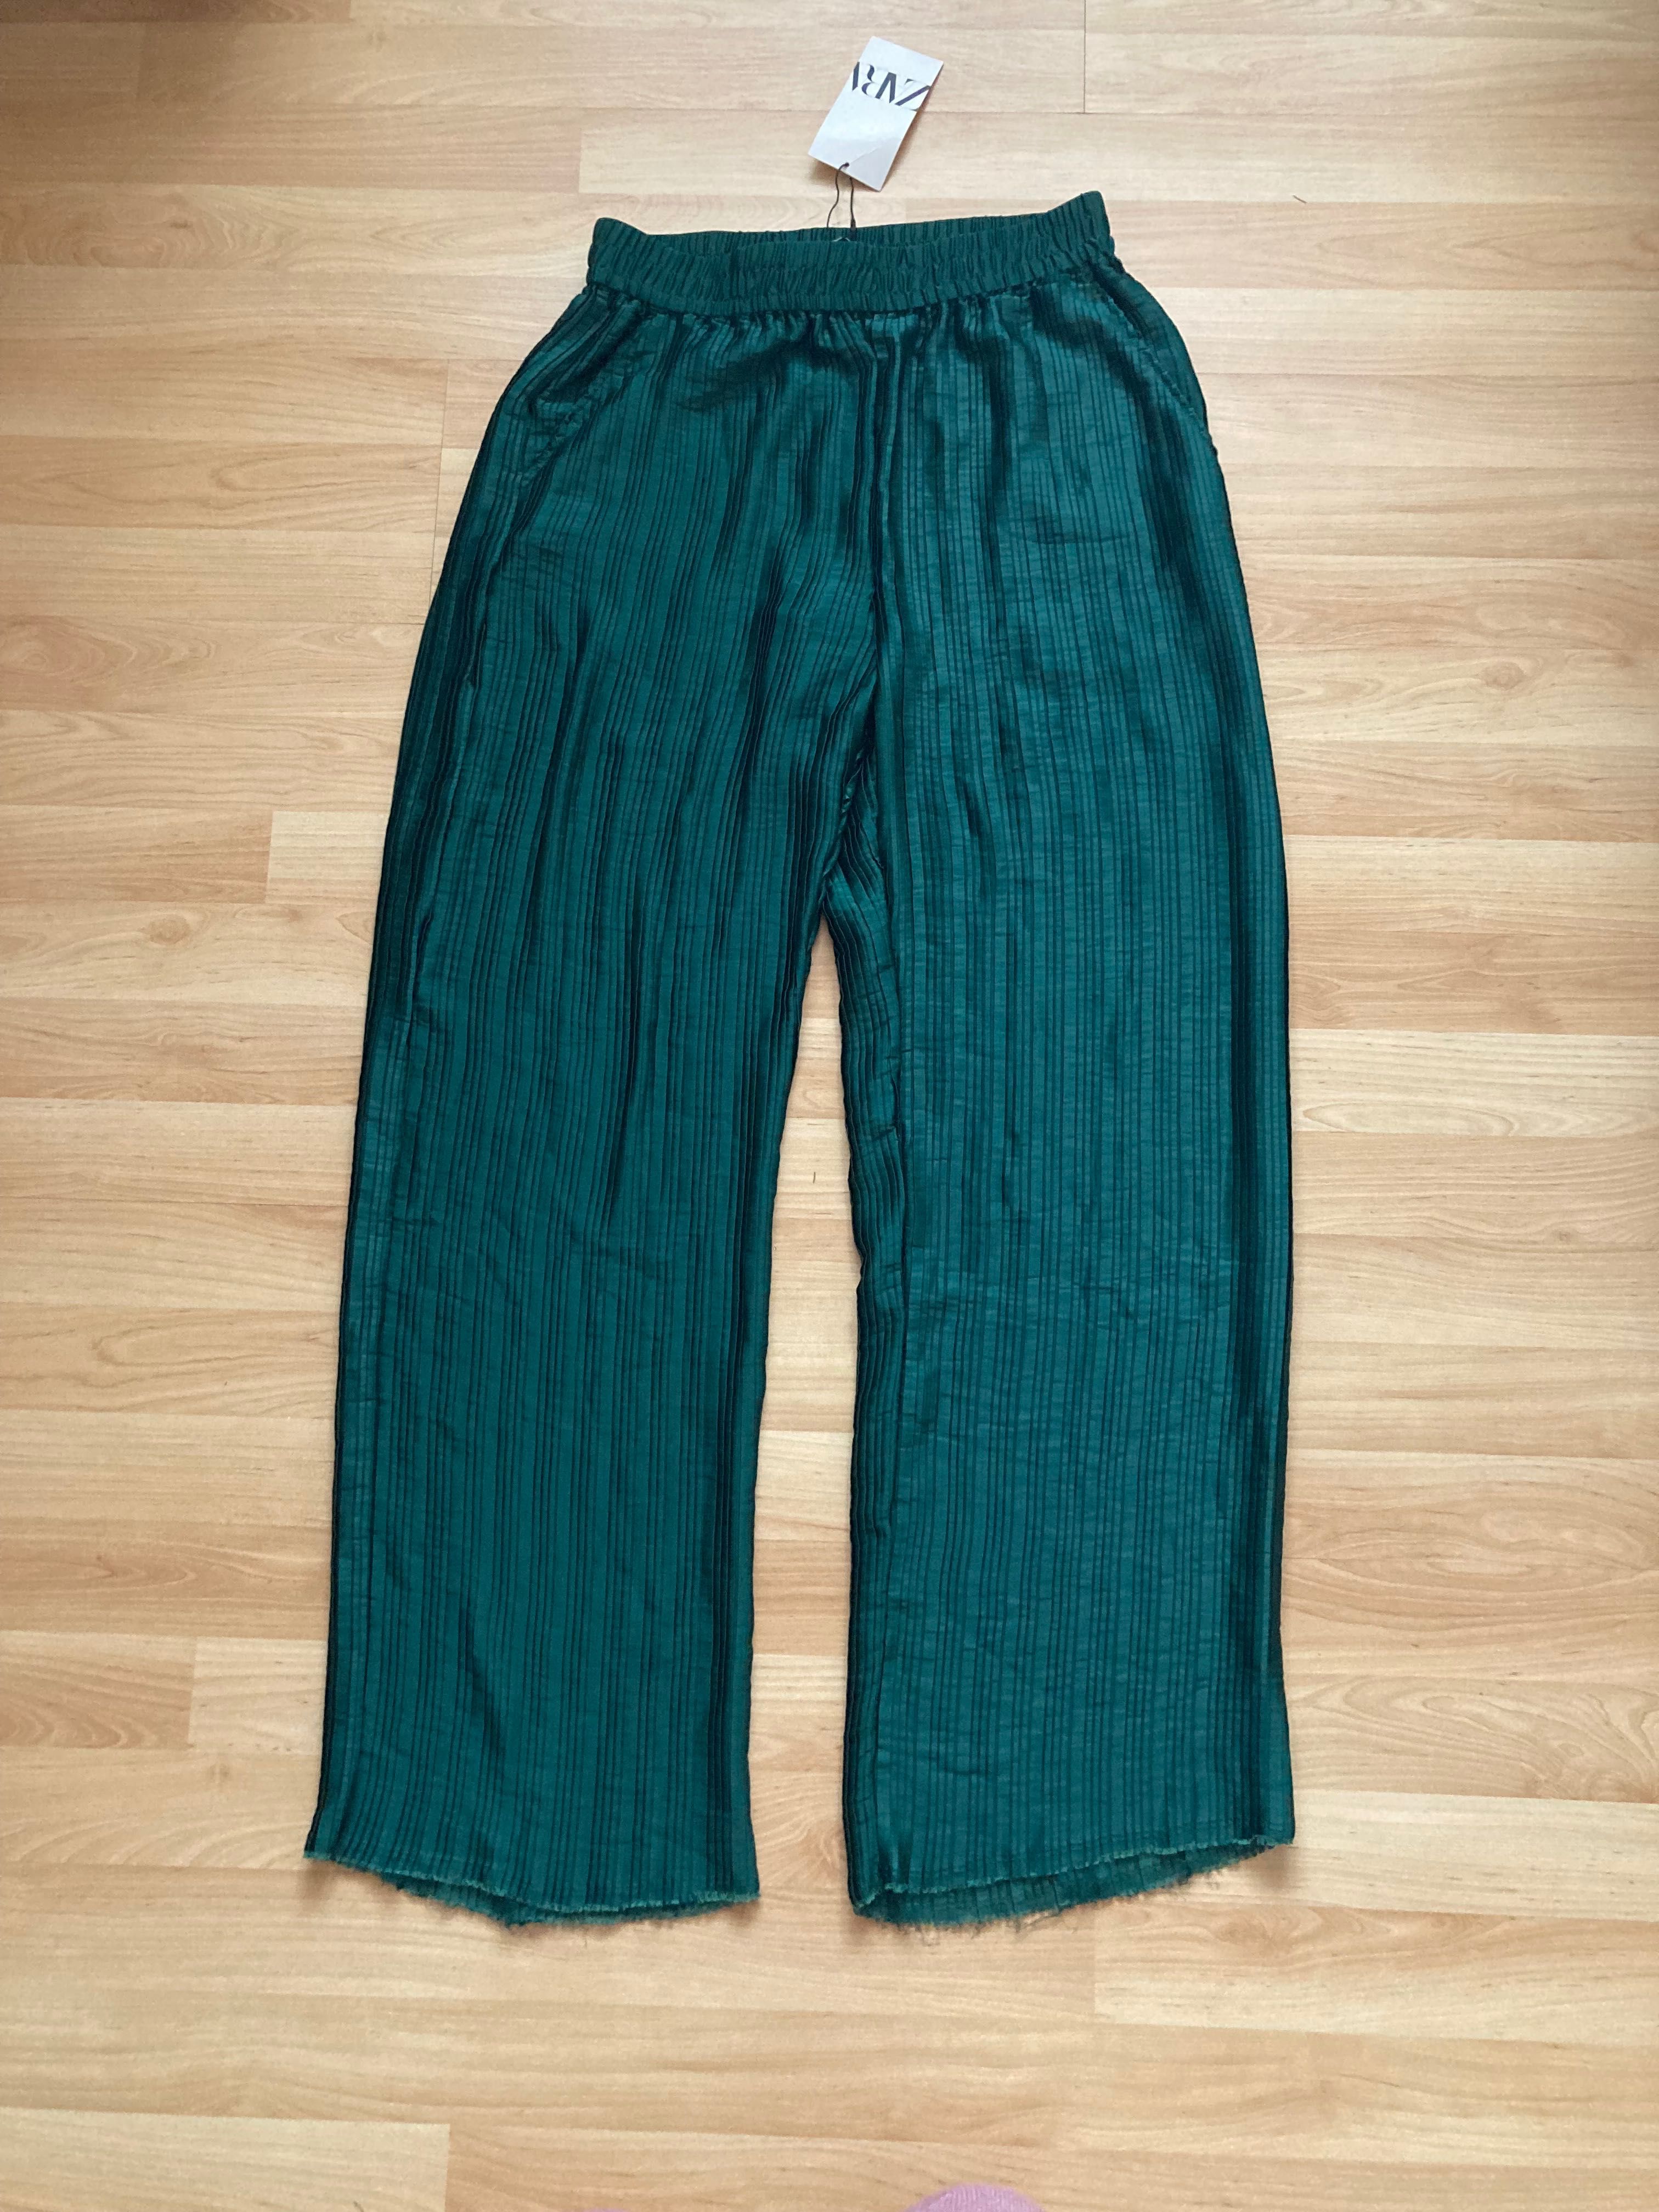 Nowe długie plisowane spodnie butelkowa zieleń Zara roz. S